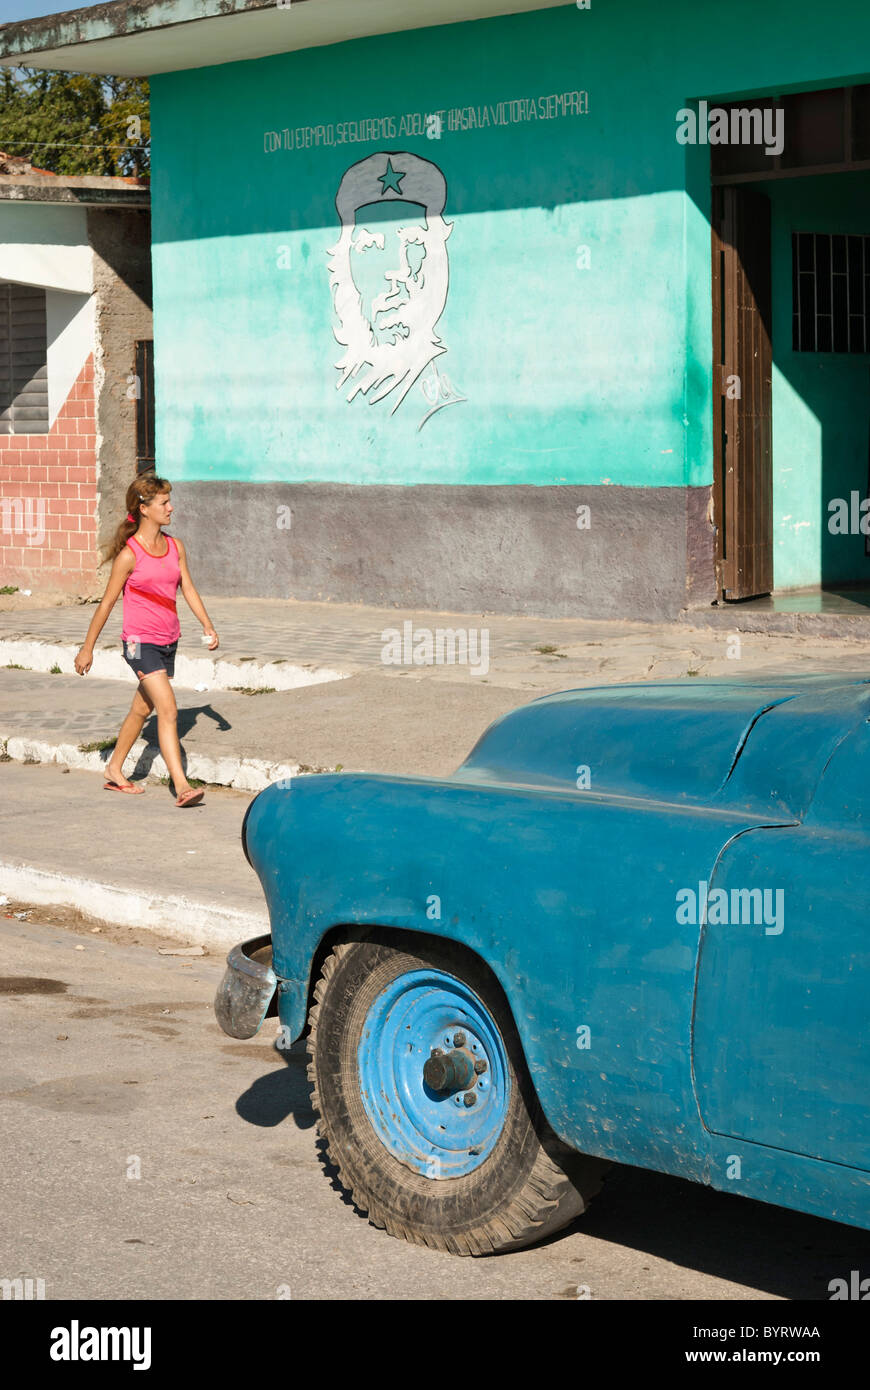 Vieille voiture dans la rue et une femme marchant par une peinture de Che Guevara, Sancti Spiritus, Cuba Banque D'Images